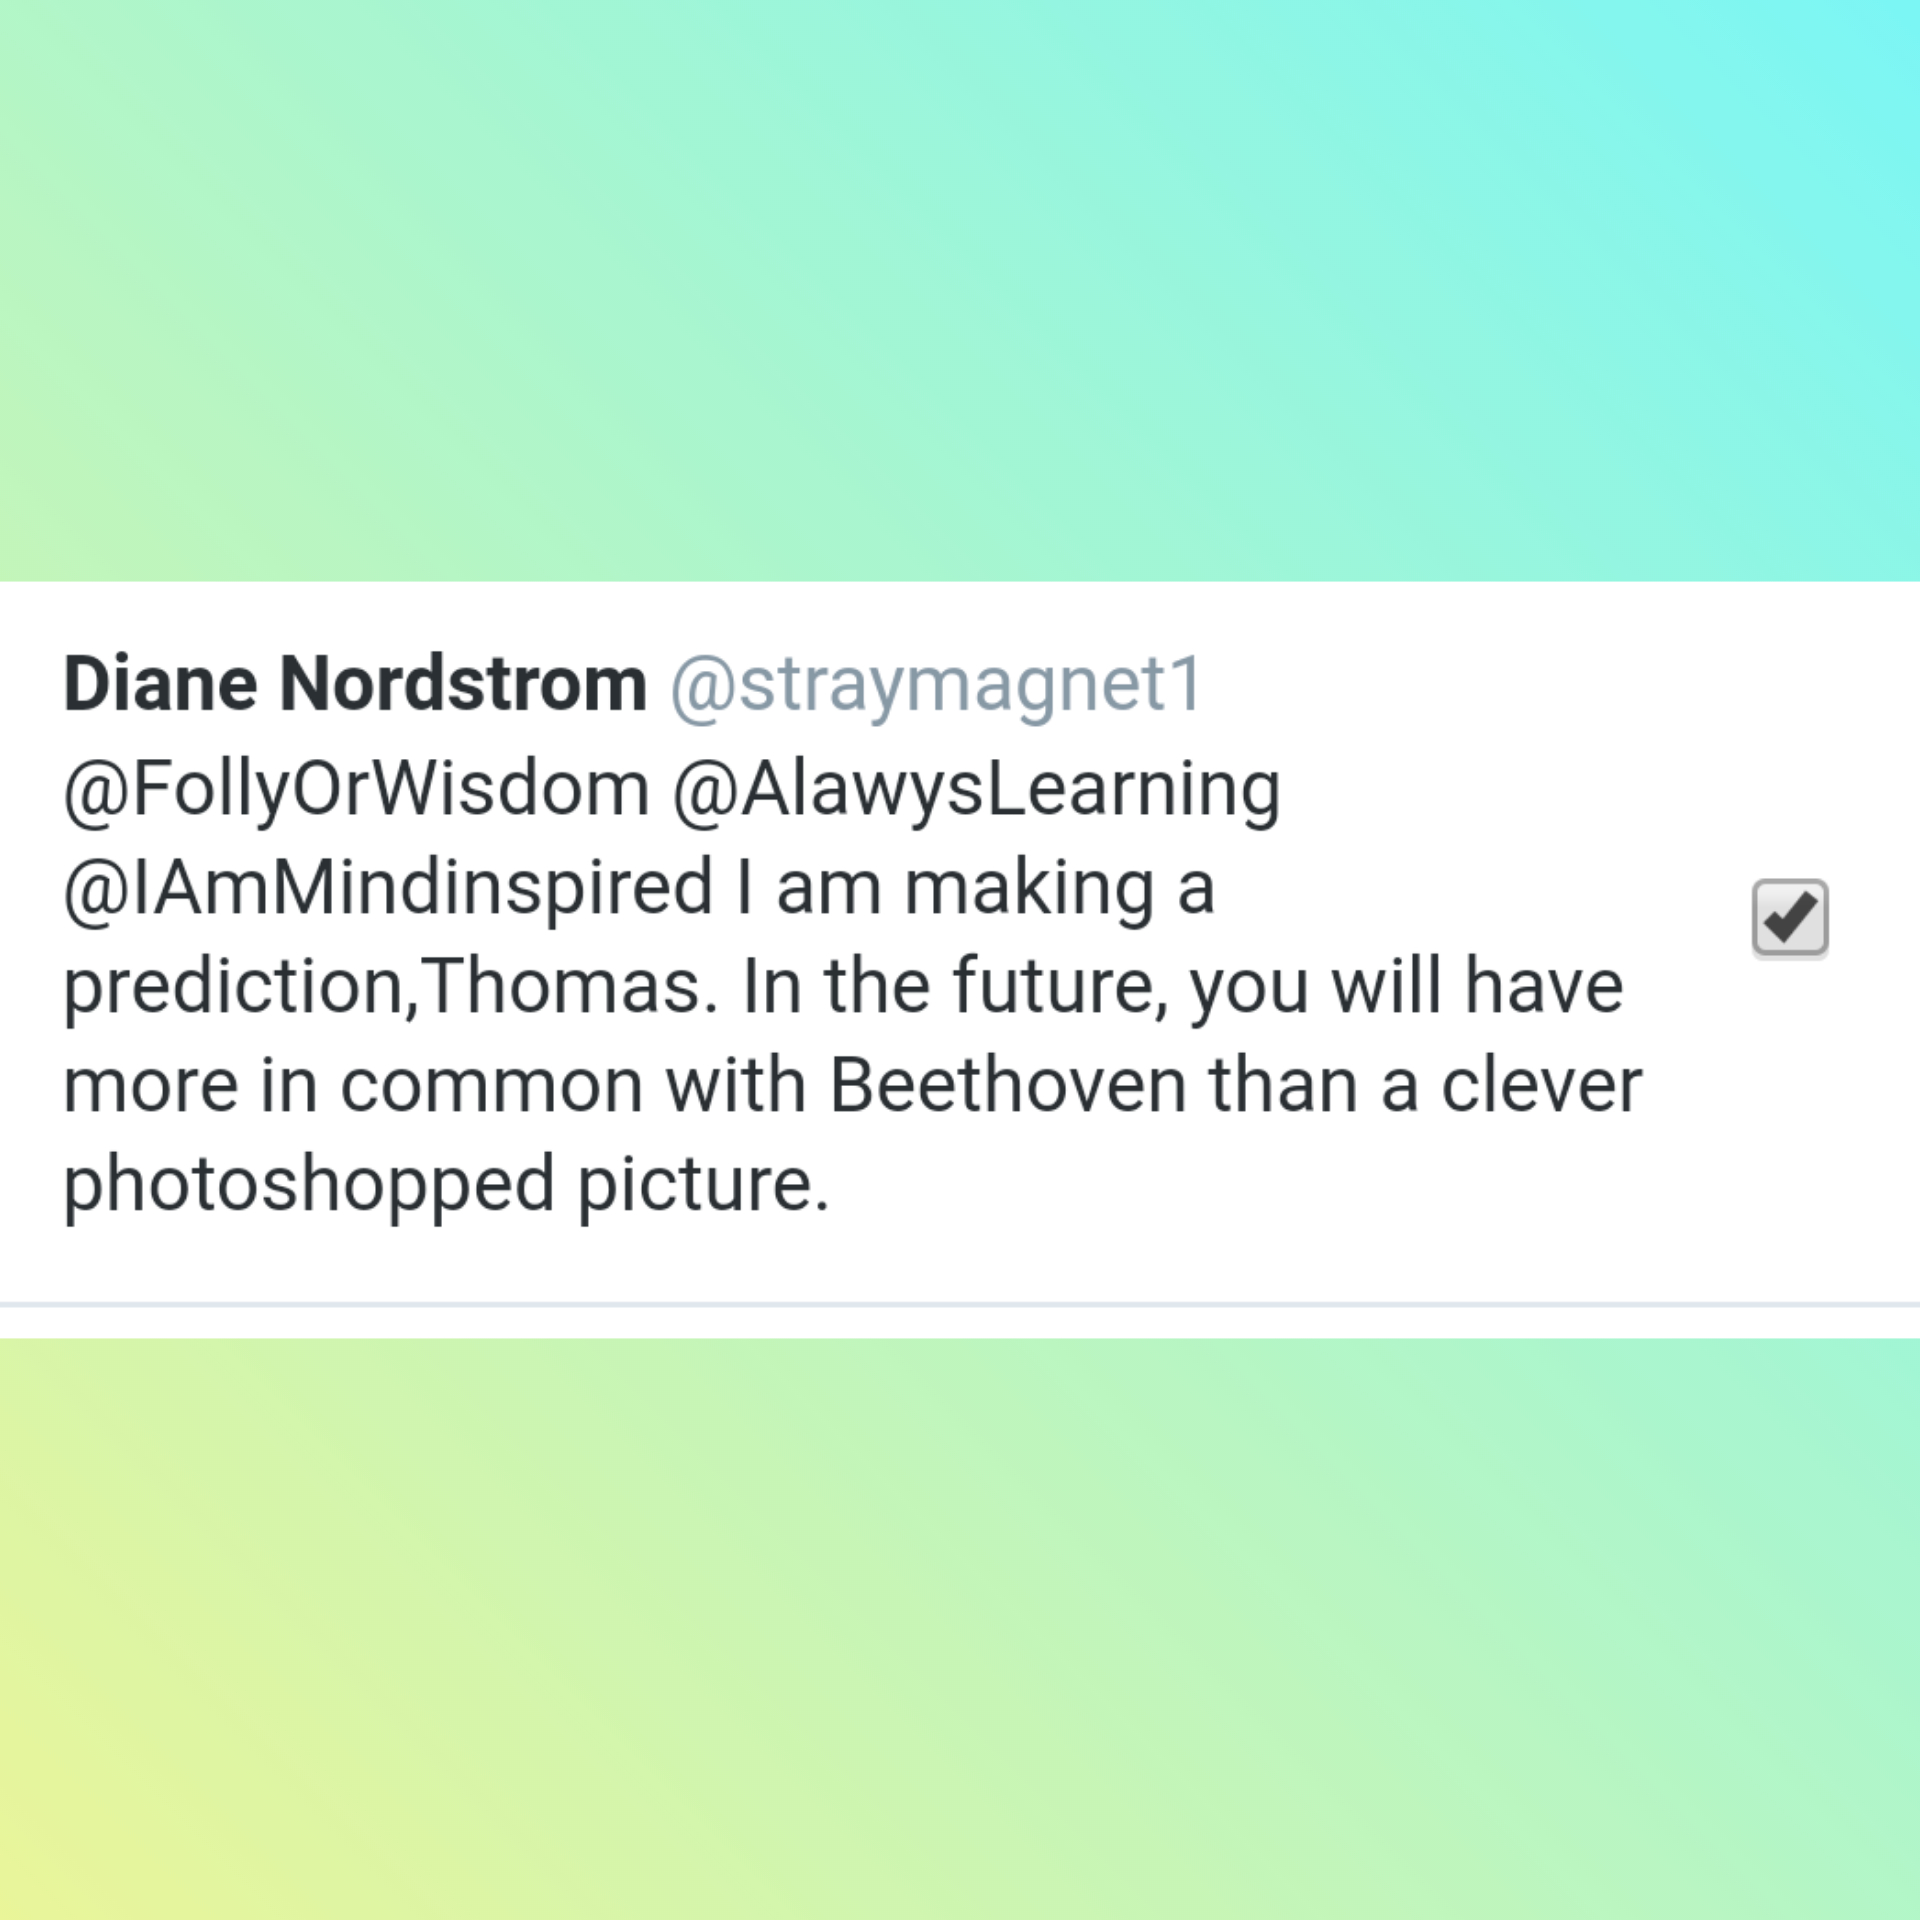 Diane "Nutbag" Nordstrom obsessively stalks